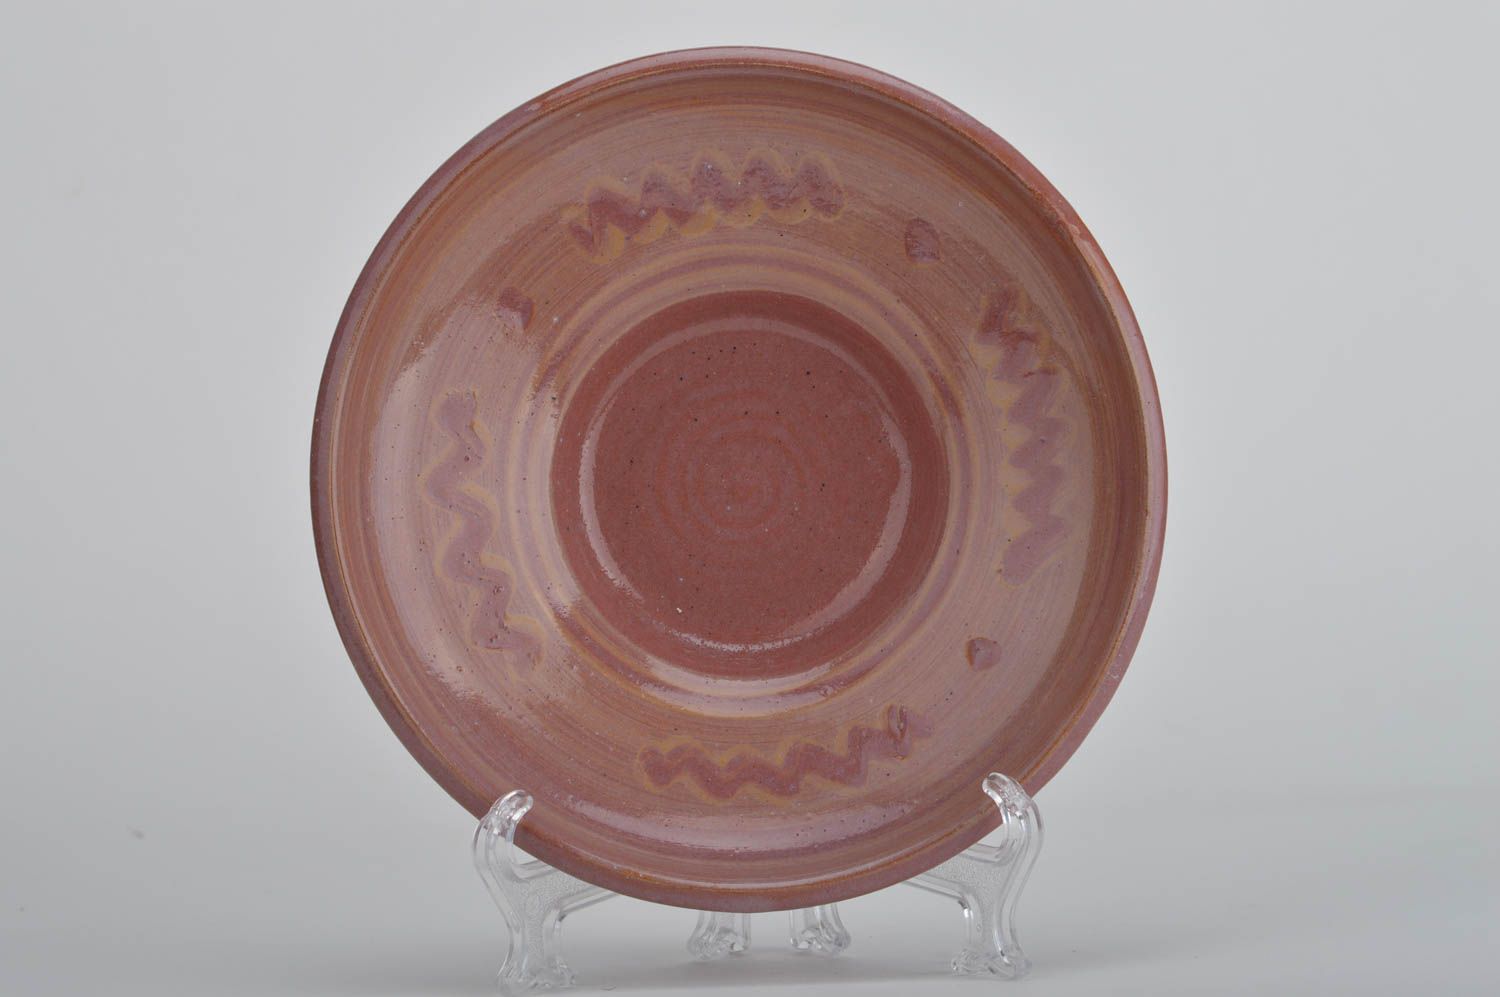 Декоративная тарелка из красной глины расписанная глазурью ручной работы фото 1